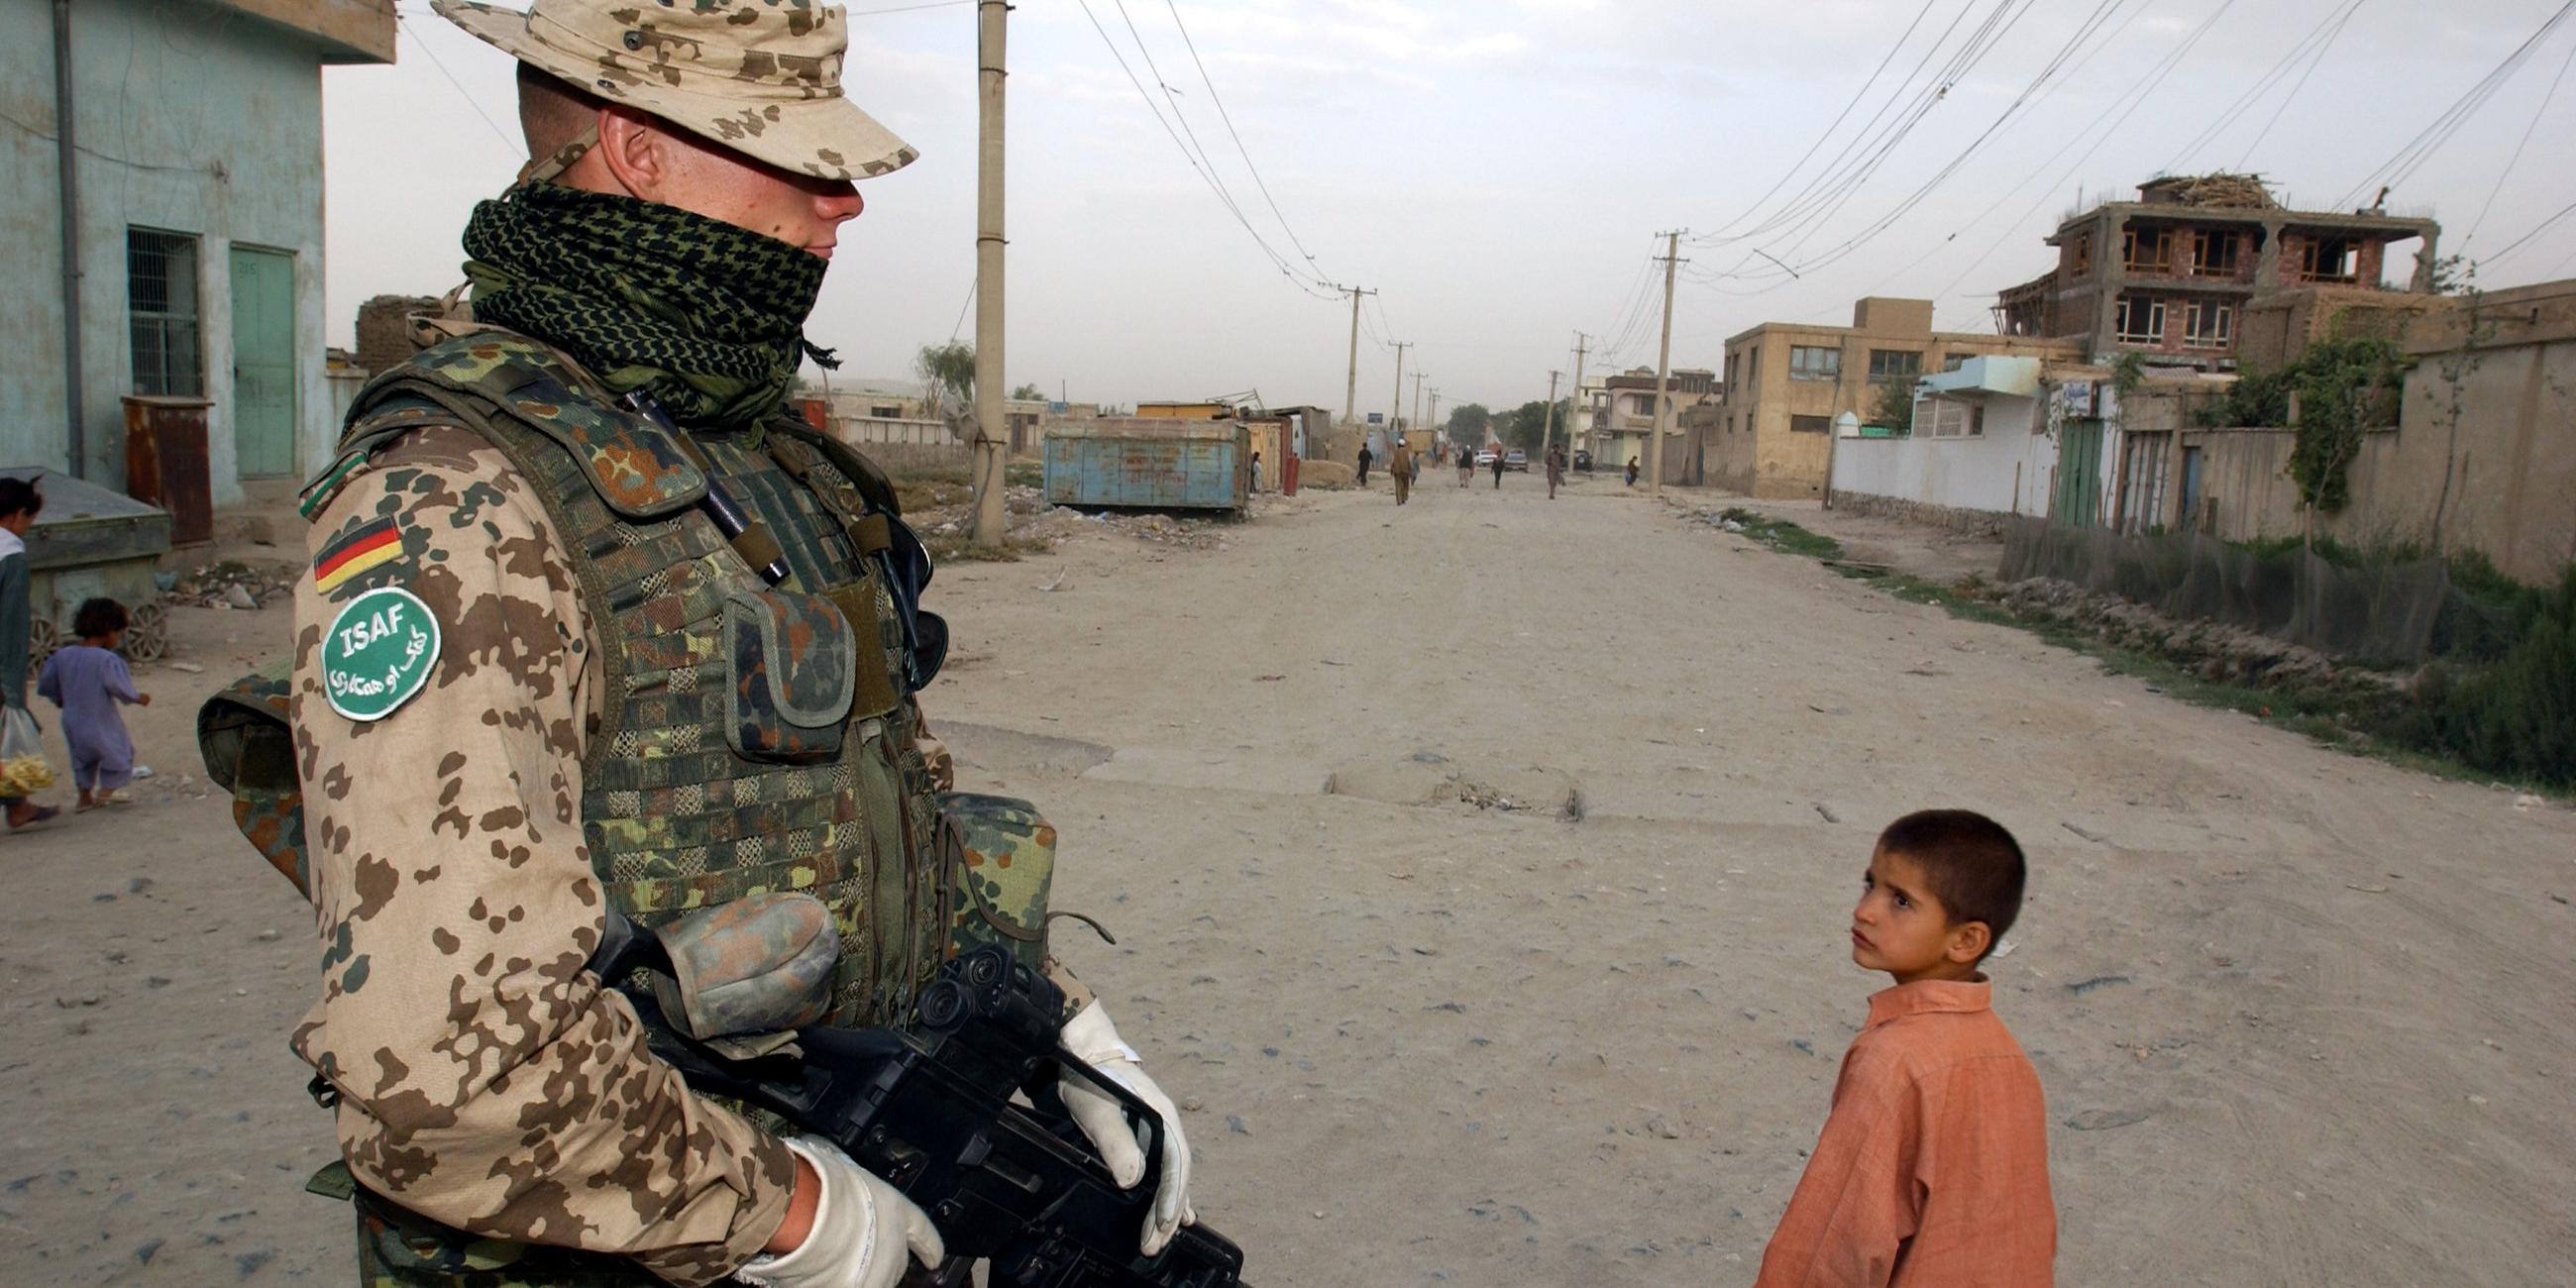  Ein Bundeswehrsoldat der Internationalen Afghanistan- Schutztruppe (ISAF) mit kugelsicherer Weste beobachtet am Montag, dem 04.08.2003 einen an ihm vorbei gehenden afghanischen Jungen in Karteparwan, einem nordoestlichen Stadtteil von Kabul.  